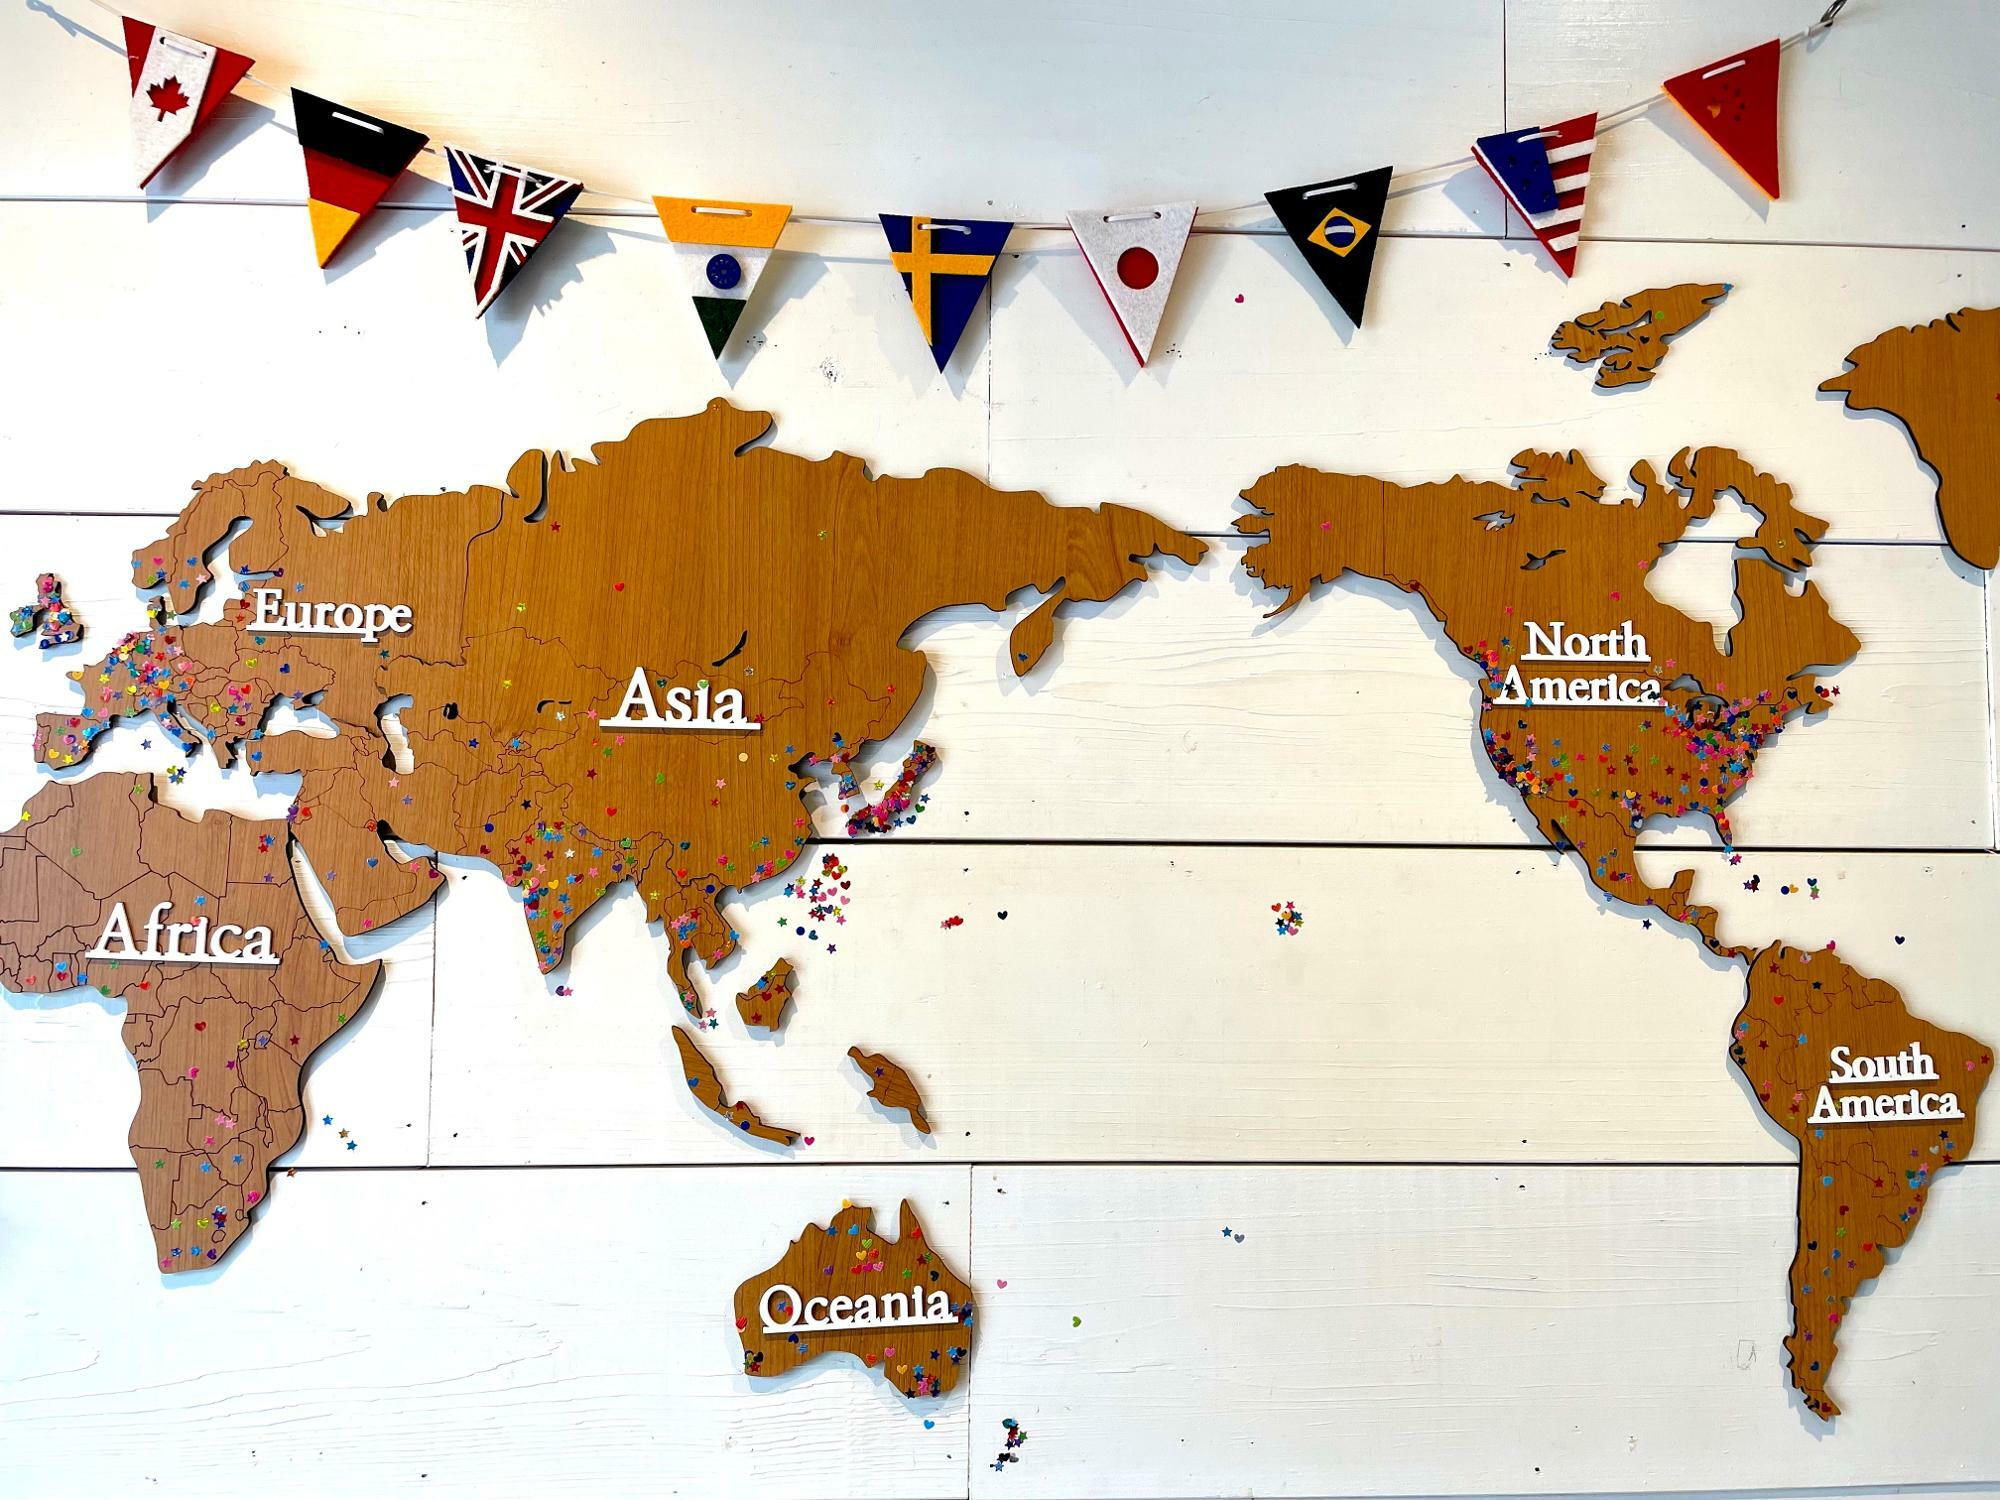 壁にある地図の中には、お客さん達の出身国の場所にシールが貼られていた